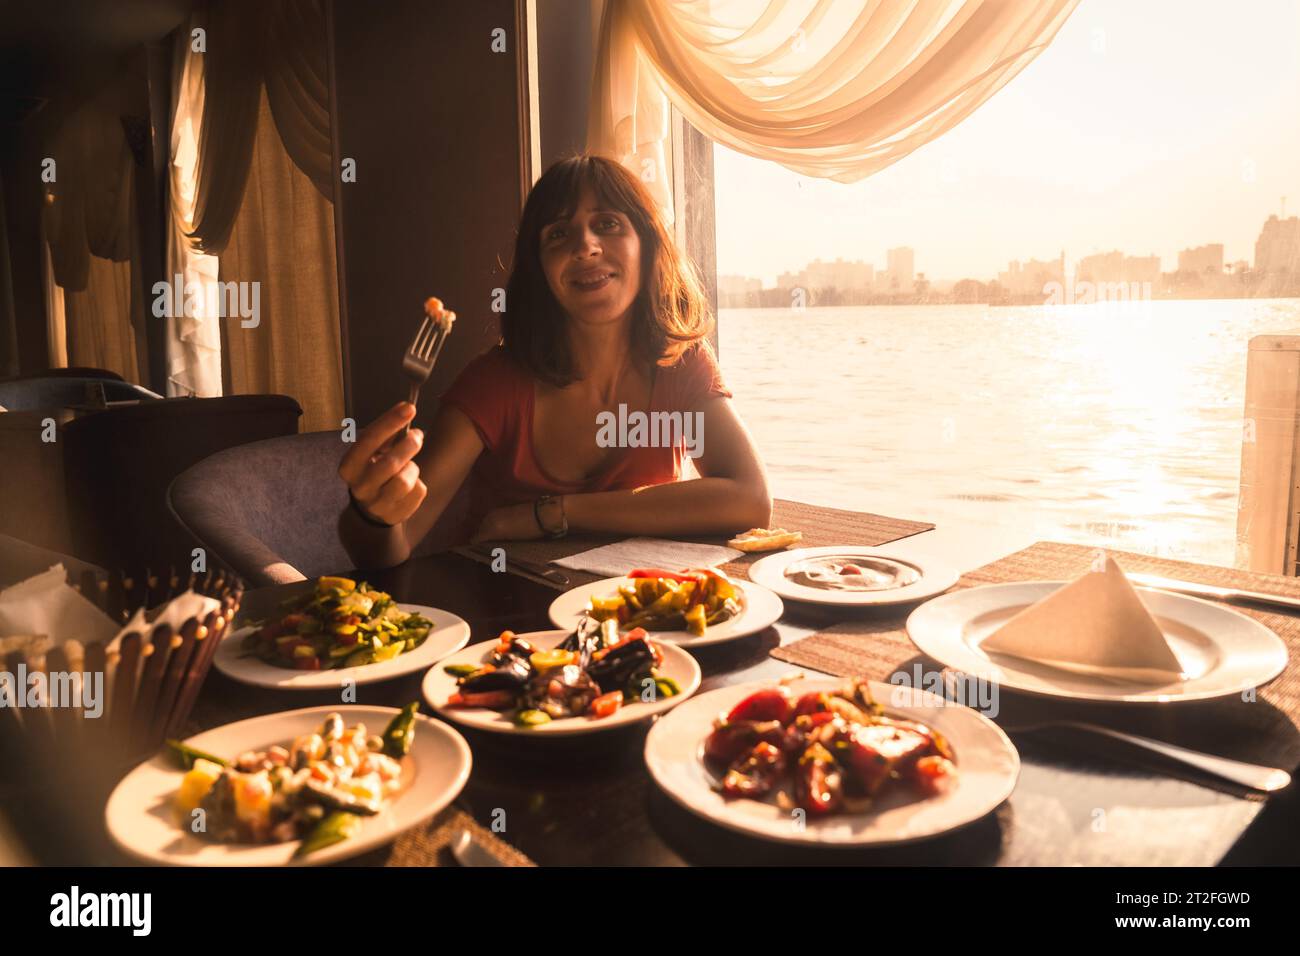 Un giovane turista che cena su una barca sul nilo un tradizionale pasto egiziano con la luce del tramonto nella finestra, la città del Cairo in background. Foto Stock